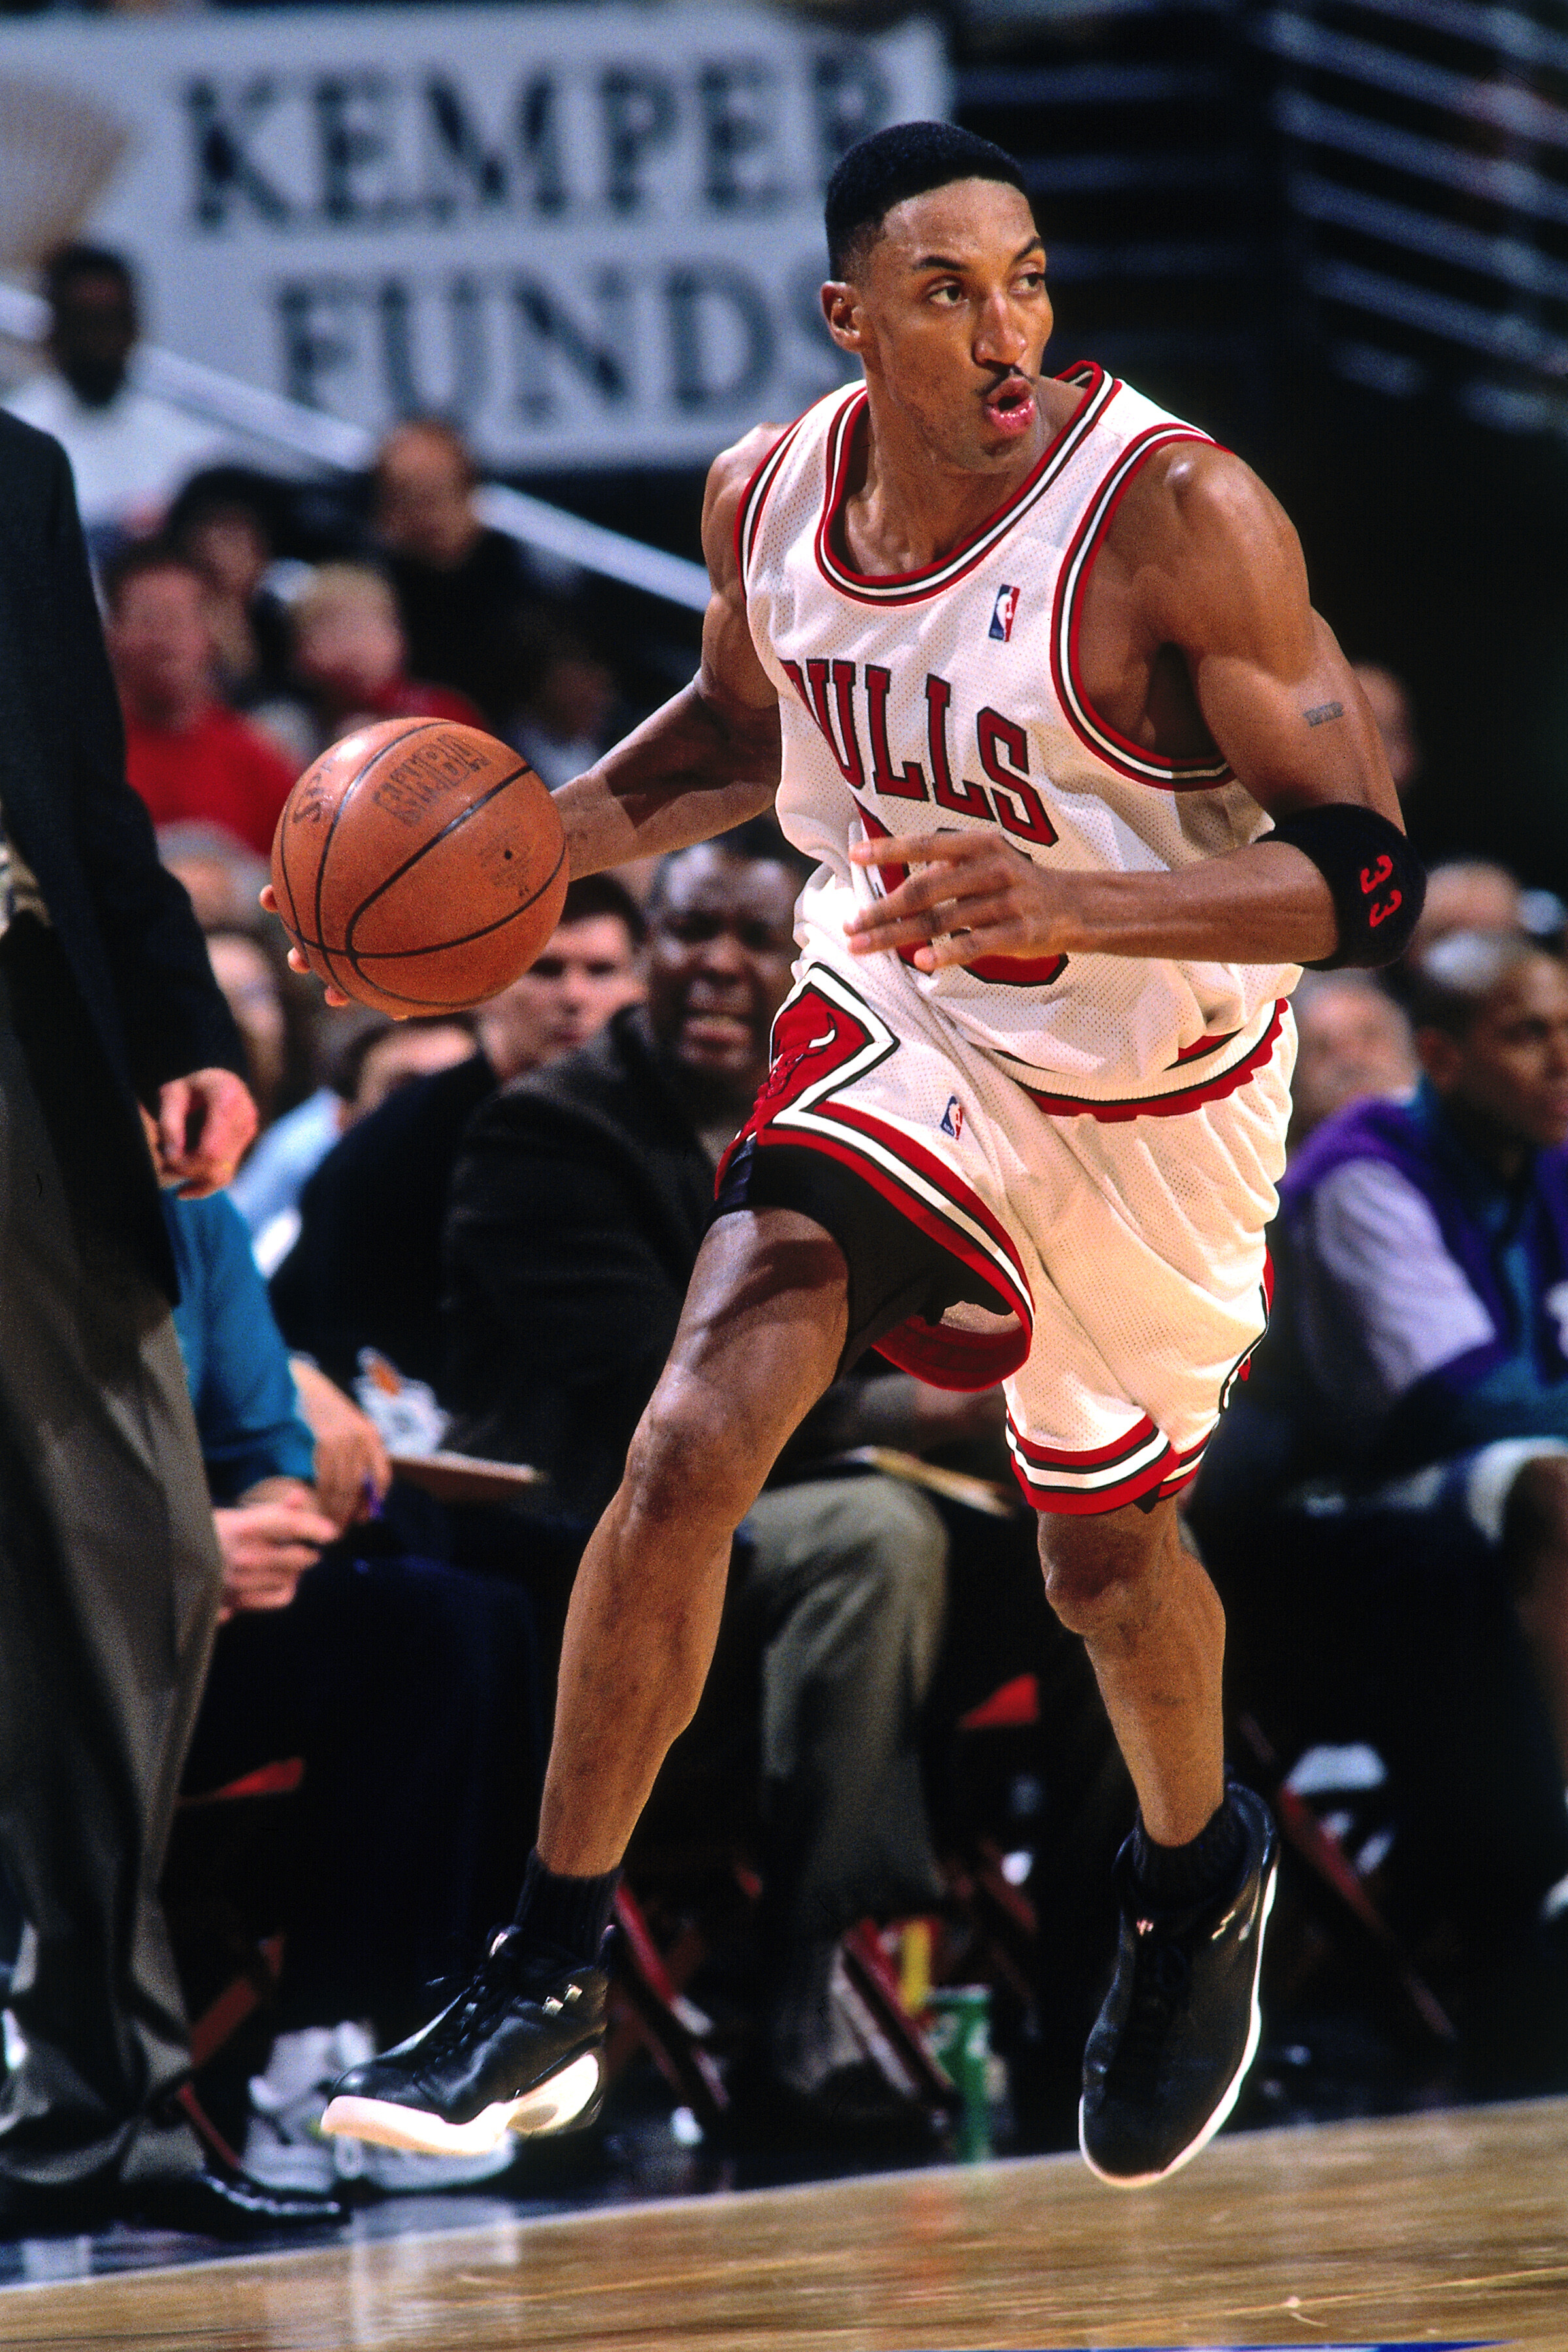 #33 スコッティ・ピッペン  1965年9月25日生まれ。スモールフォワード。ジョーダンに次ぐスコアラーとして最強ブルズを牽引。Photo by Getty Imagesバスケットボール記事一覧